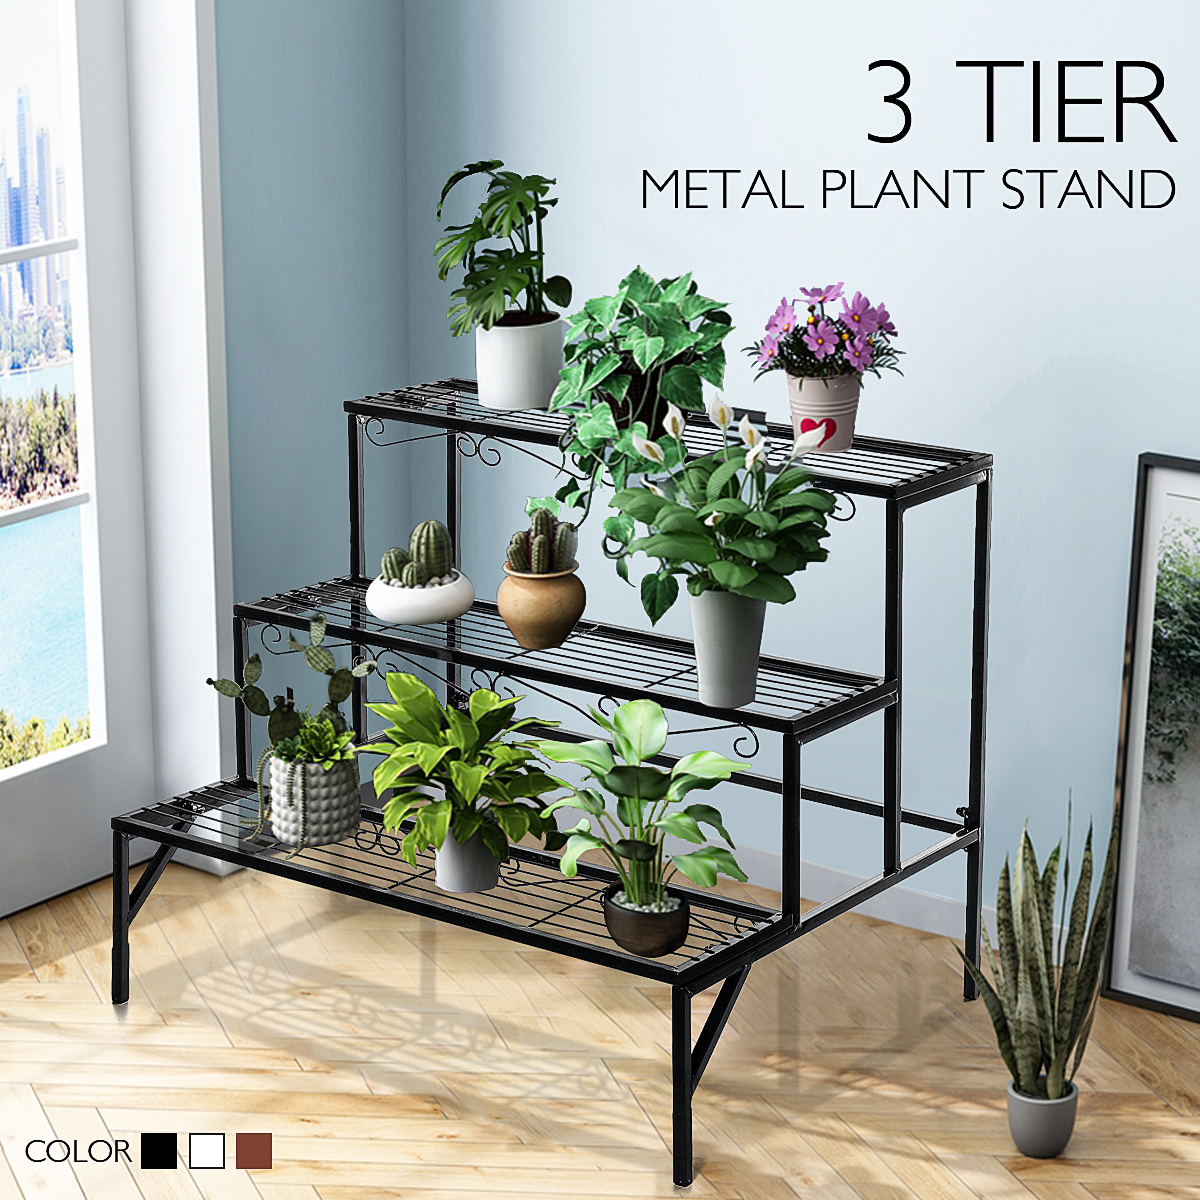 3 Tier Metal Plant Stand Flower Pot Holder Shelves Garden Home Indoor Outdoor 4